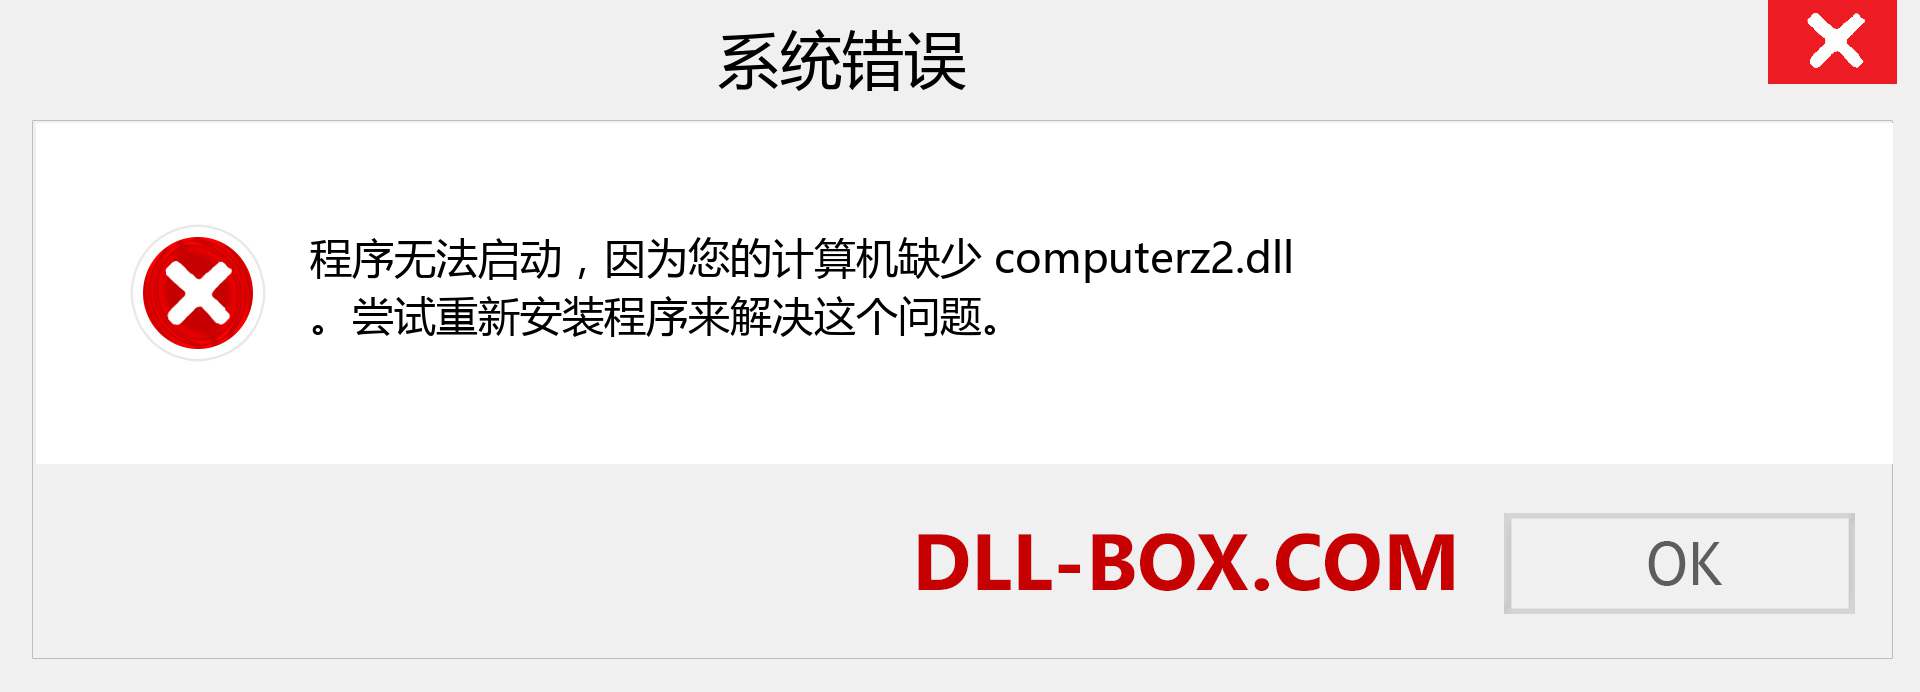 computerz2.dll 文件丢失？。 适用于 Windows 7、8、10 的下载 - 修复 Windows、照片、图像上的 computerz2 dll 丢失错误